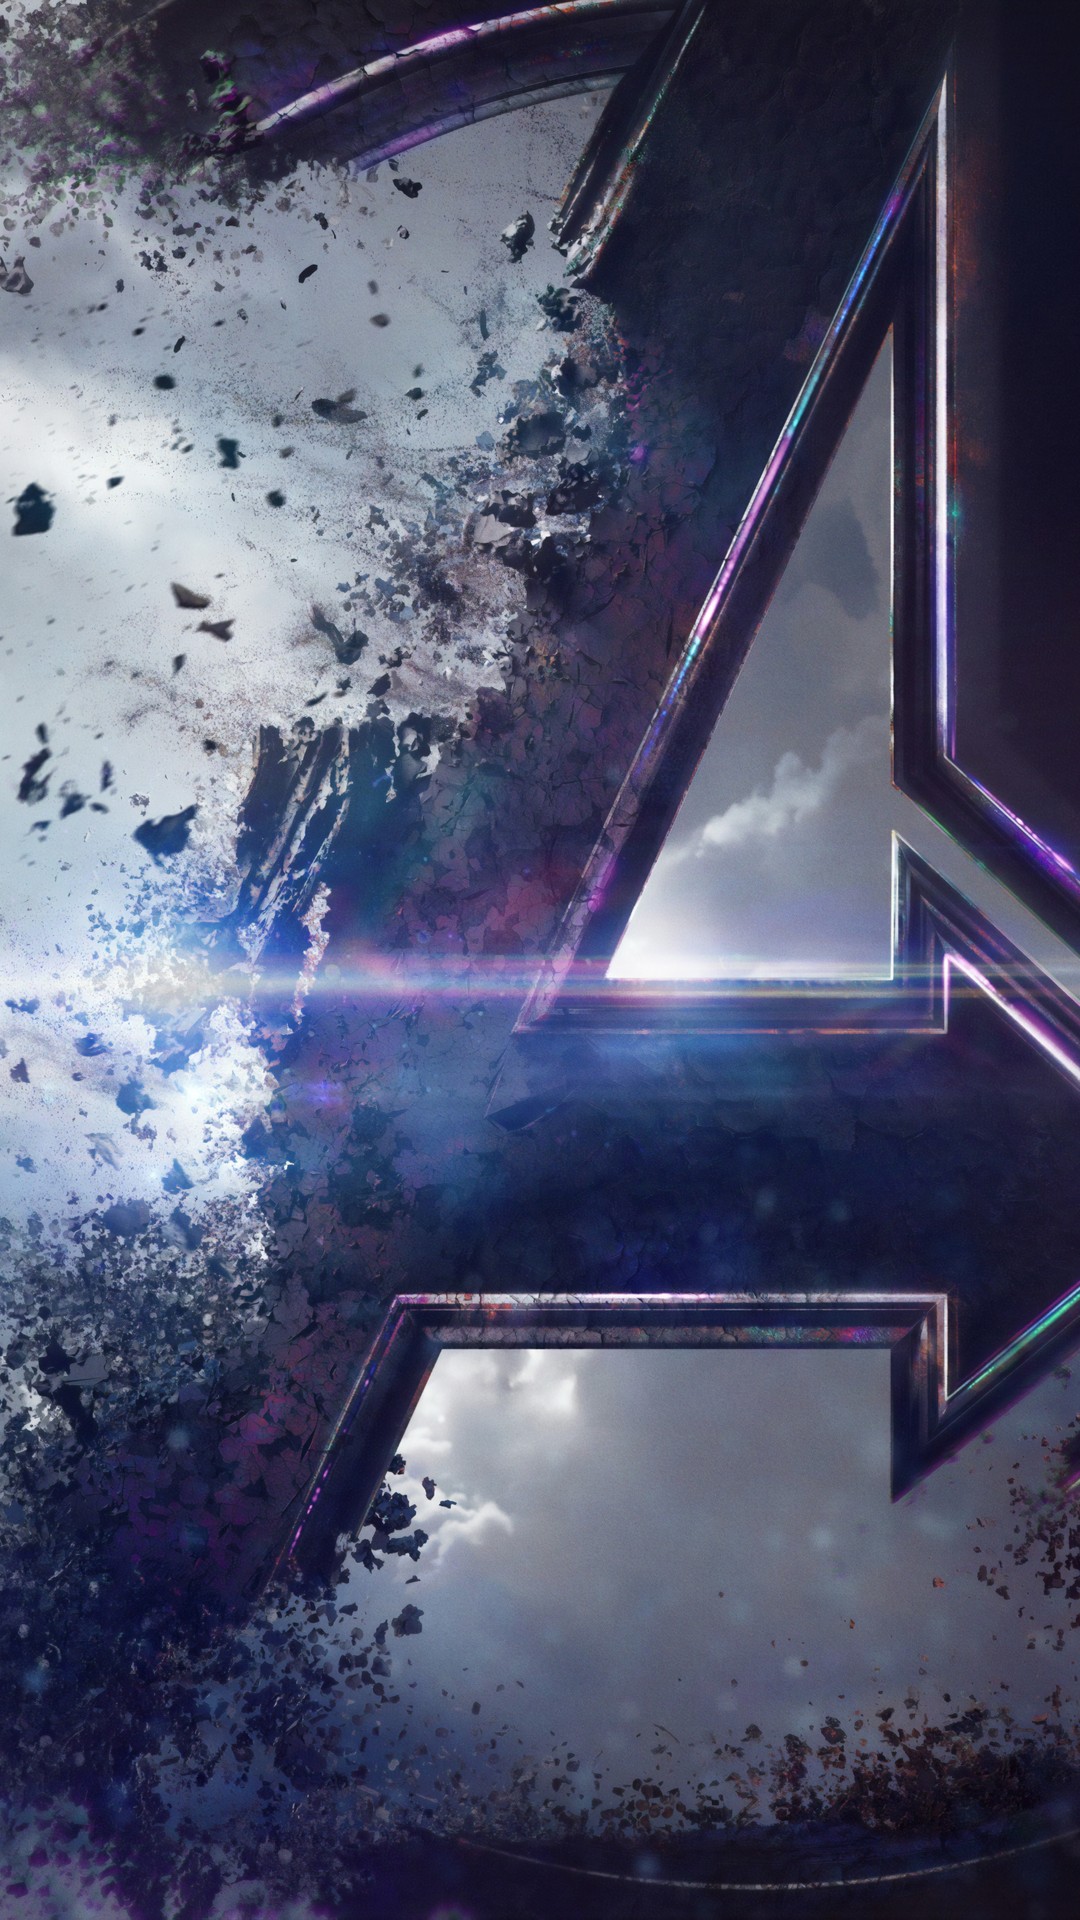 Avengers Endgame 2019 Wallpaper For Mobile With High-resolution - Avengers Endgame Logo Wallpaper 4k - HD Wallpaper 